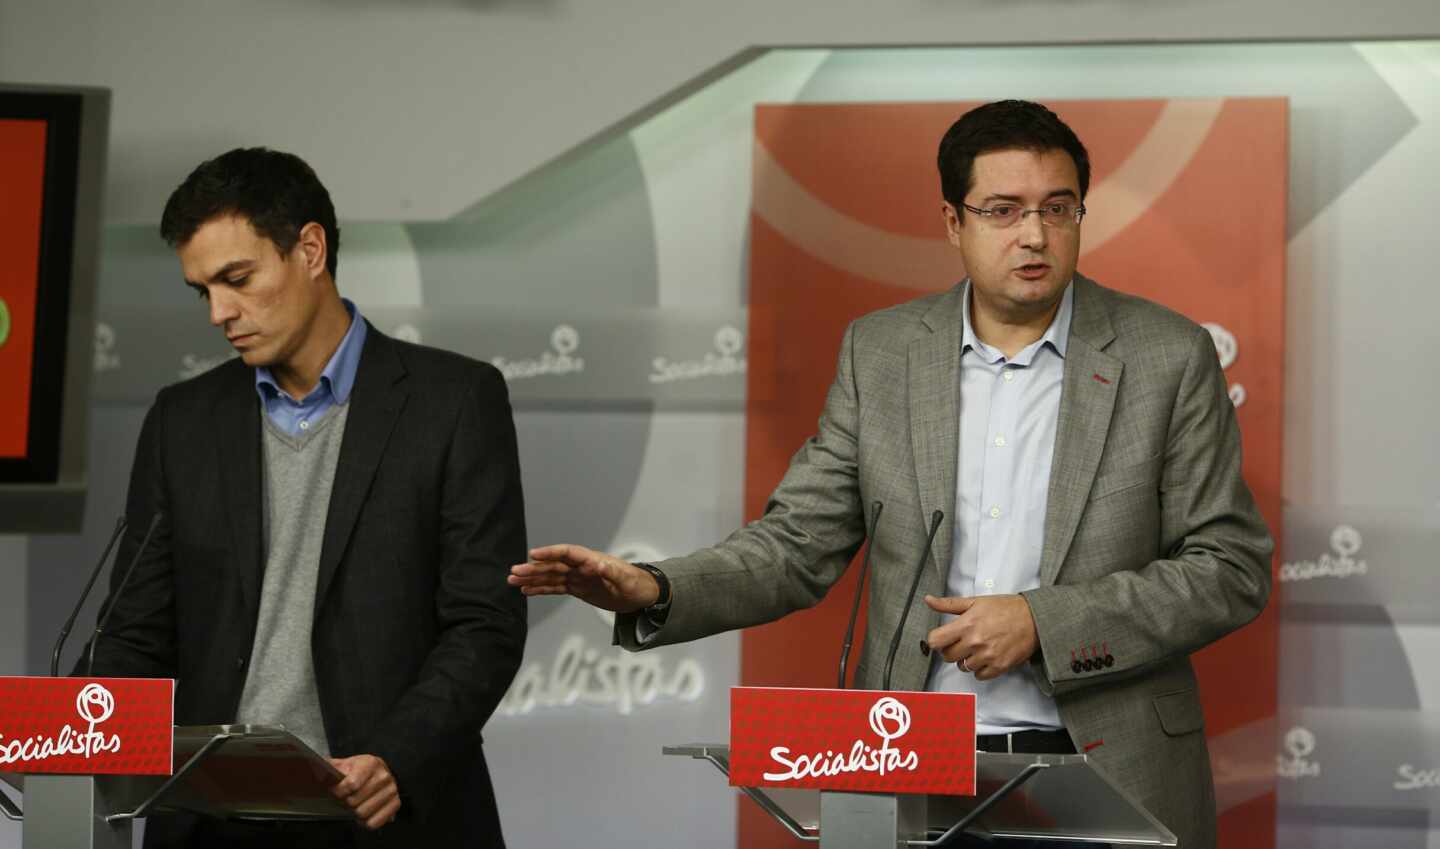 Óscar López, hoy presidente de Paradores, y Pedro Sánchez en un acto del PSOE a finales de 2013.